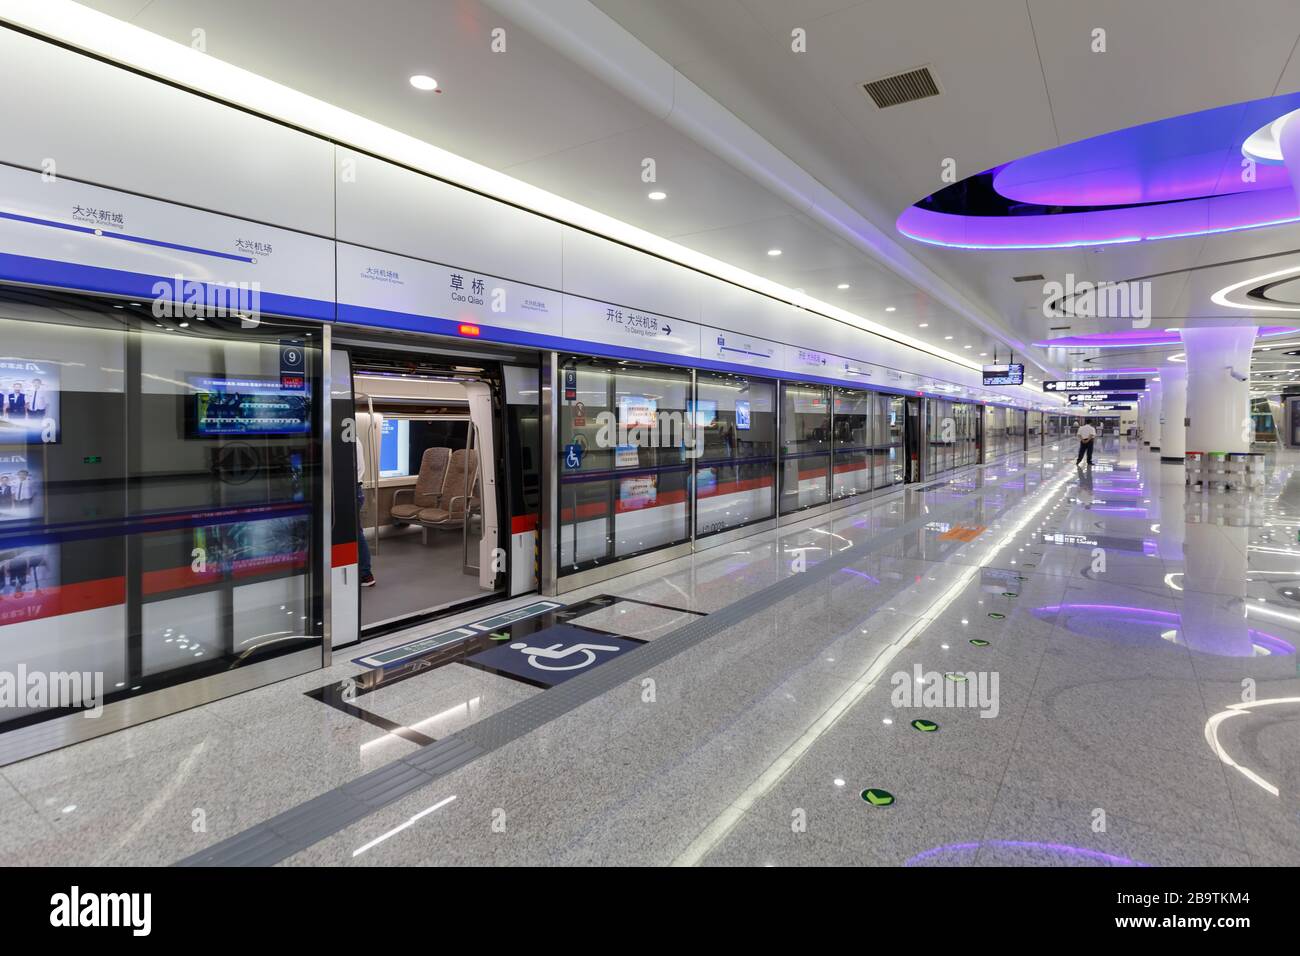 Pechino, Cina – 30 settembre 2019: CaO Qiao Caoqiao Peking Beijing Daxing Airport Express MRT Metro Station in Cina. Foto Stock